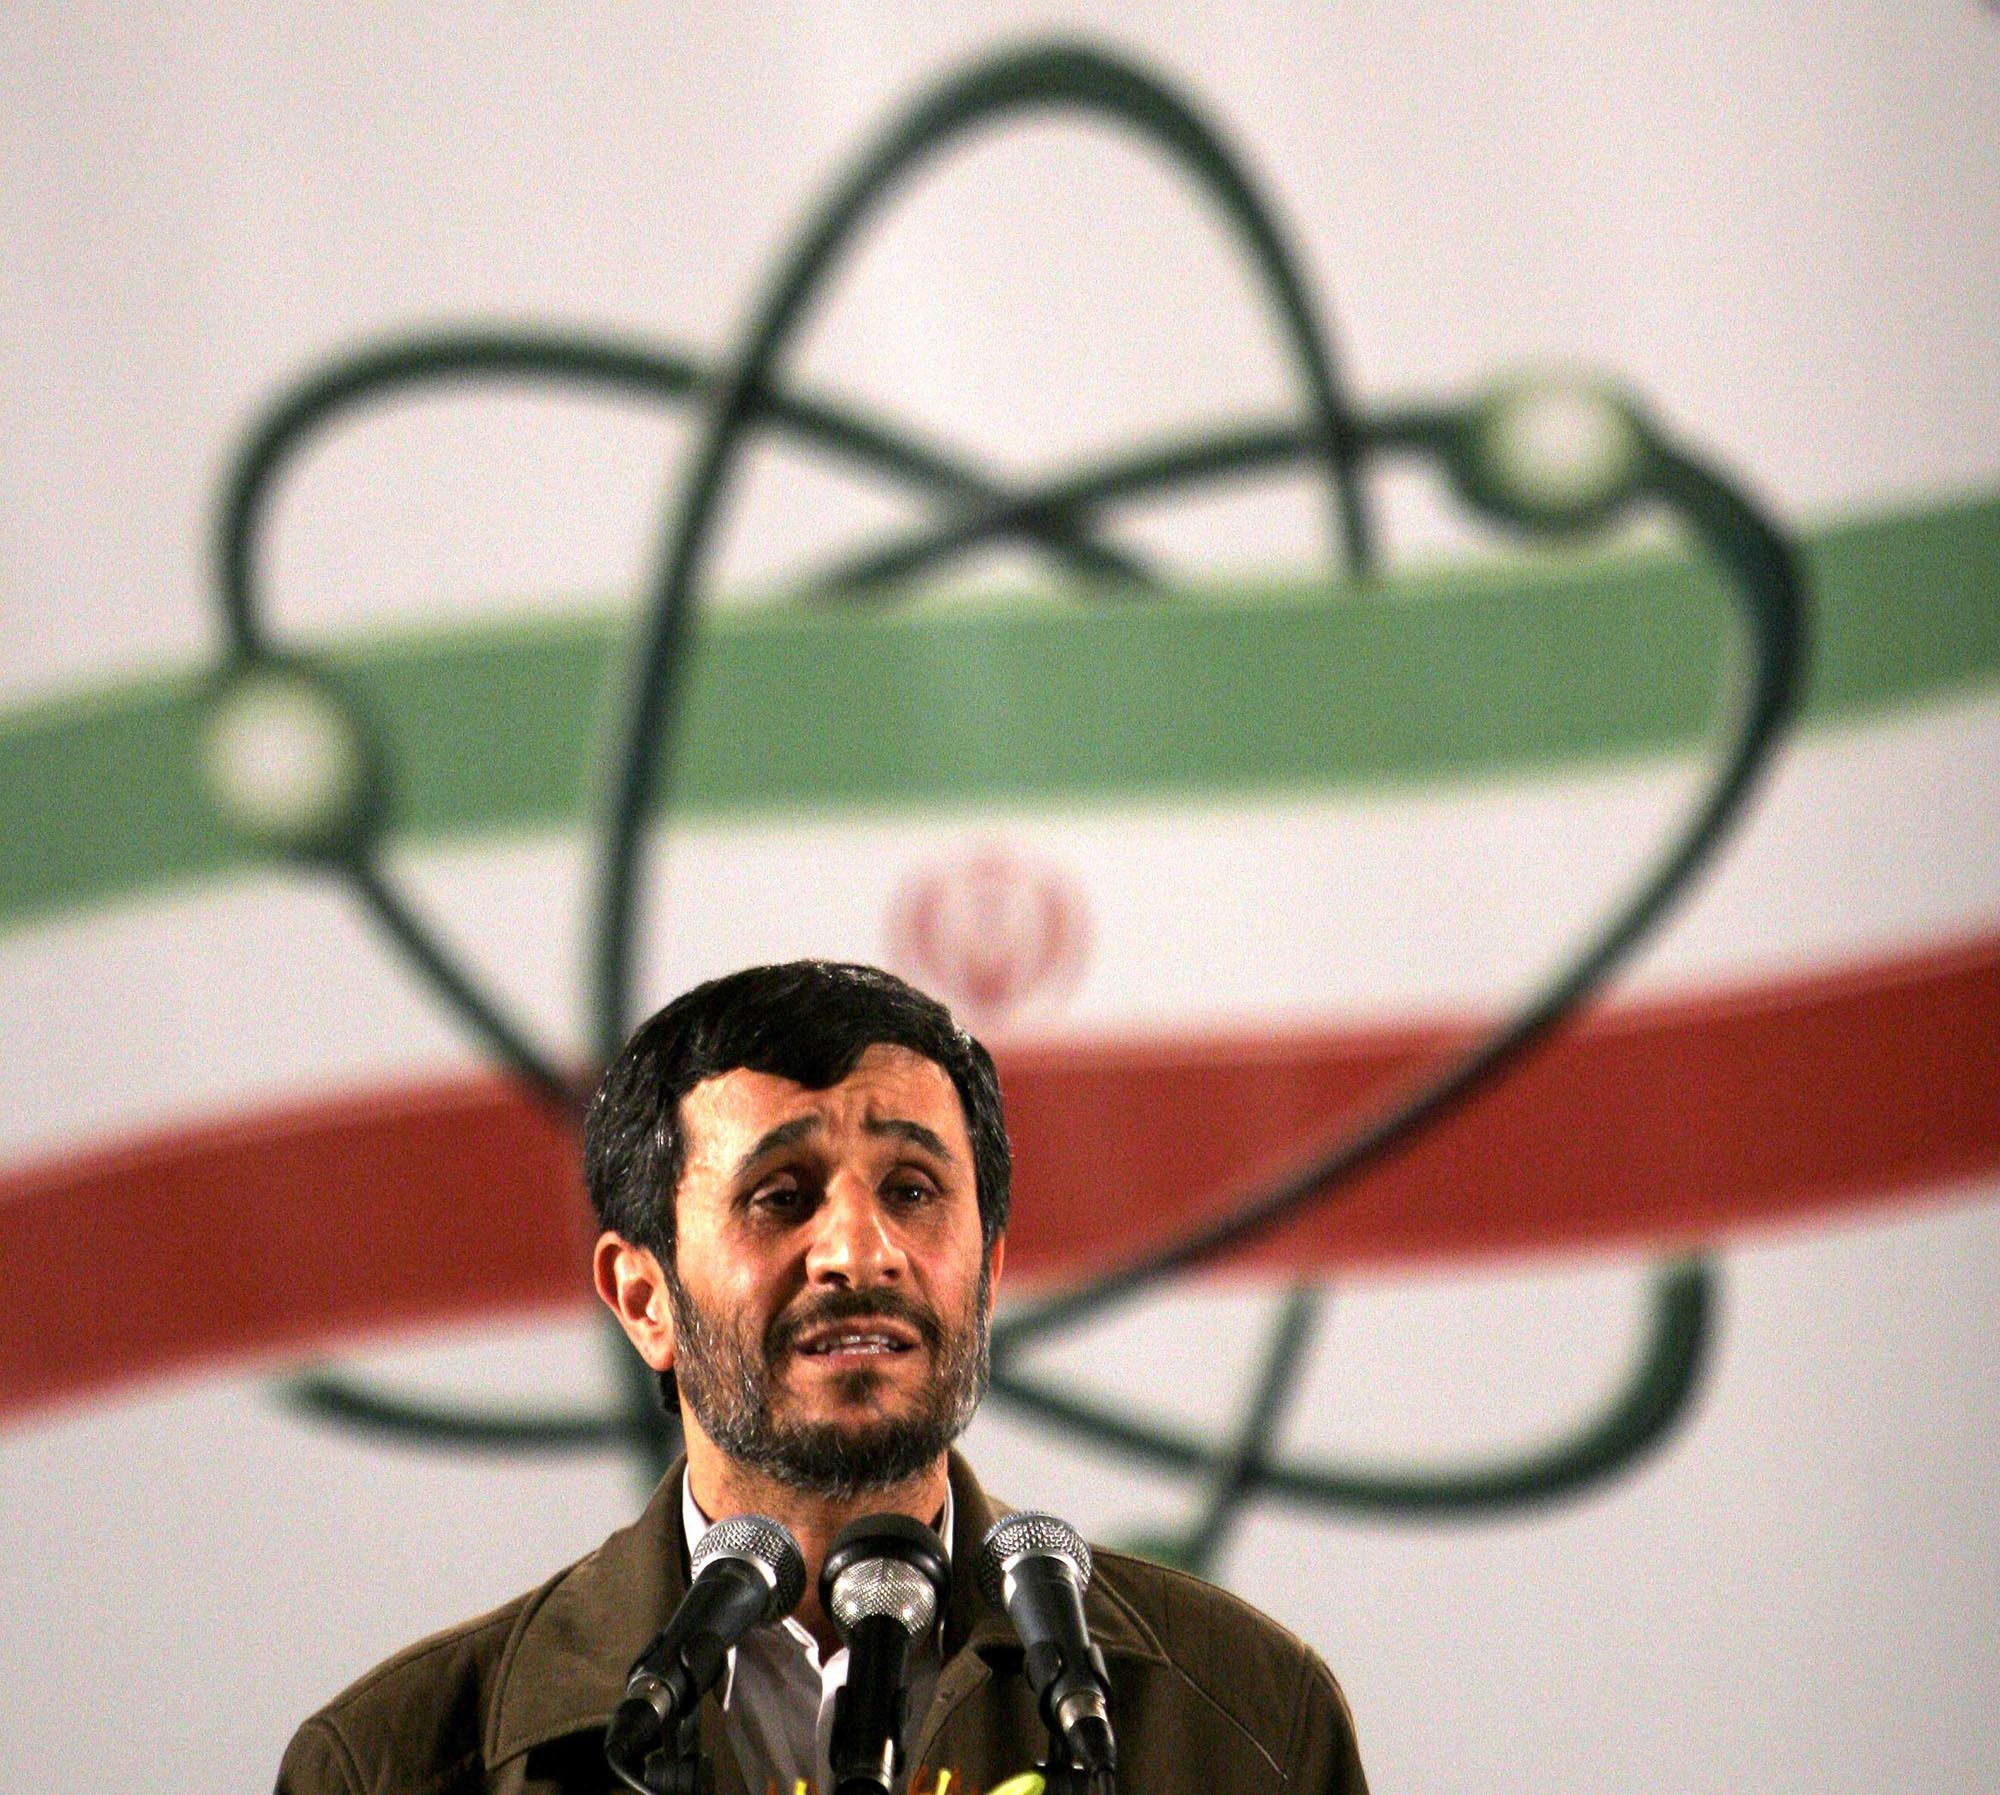 Ministrar från den iranska regeringen har nämligen citerats med planer på att öppna upp ett eget internetnätverk för invånarna i landet.
På bilden ses Irans president, Mahmoud Ahmadinejad.